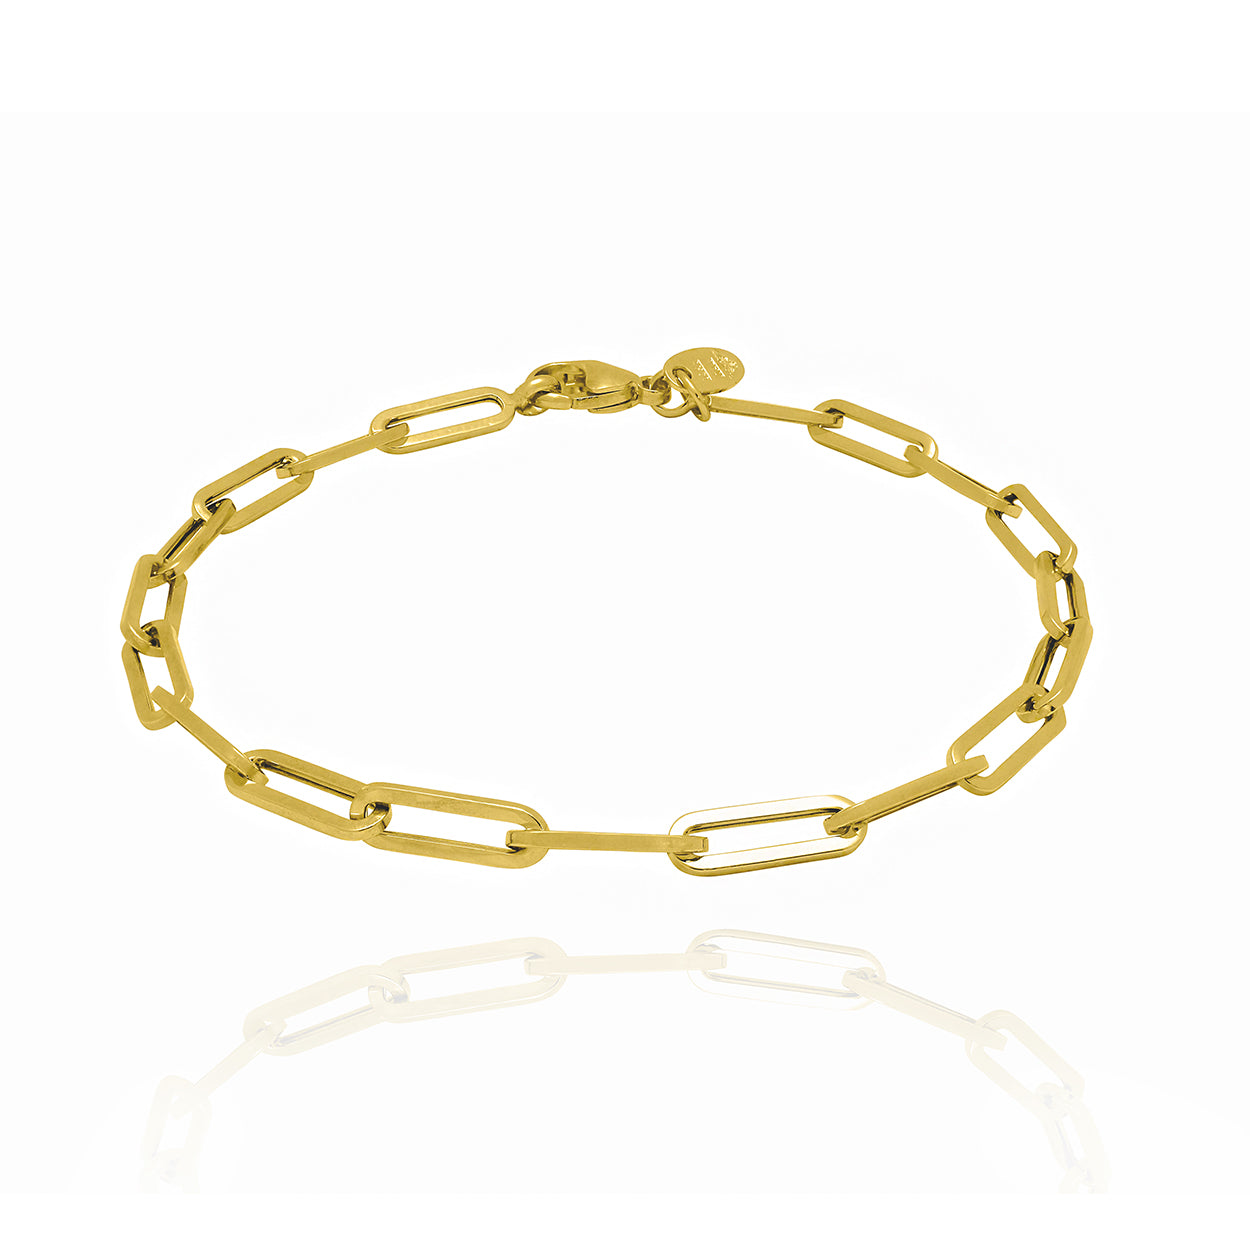 10KT Solid Gold Paper Clip Style Bracelet 4mm Wide